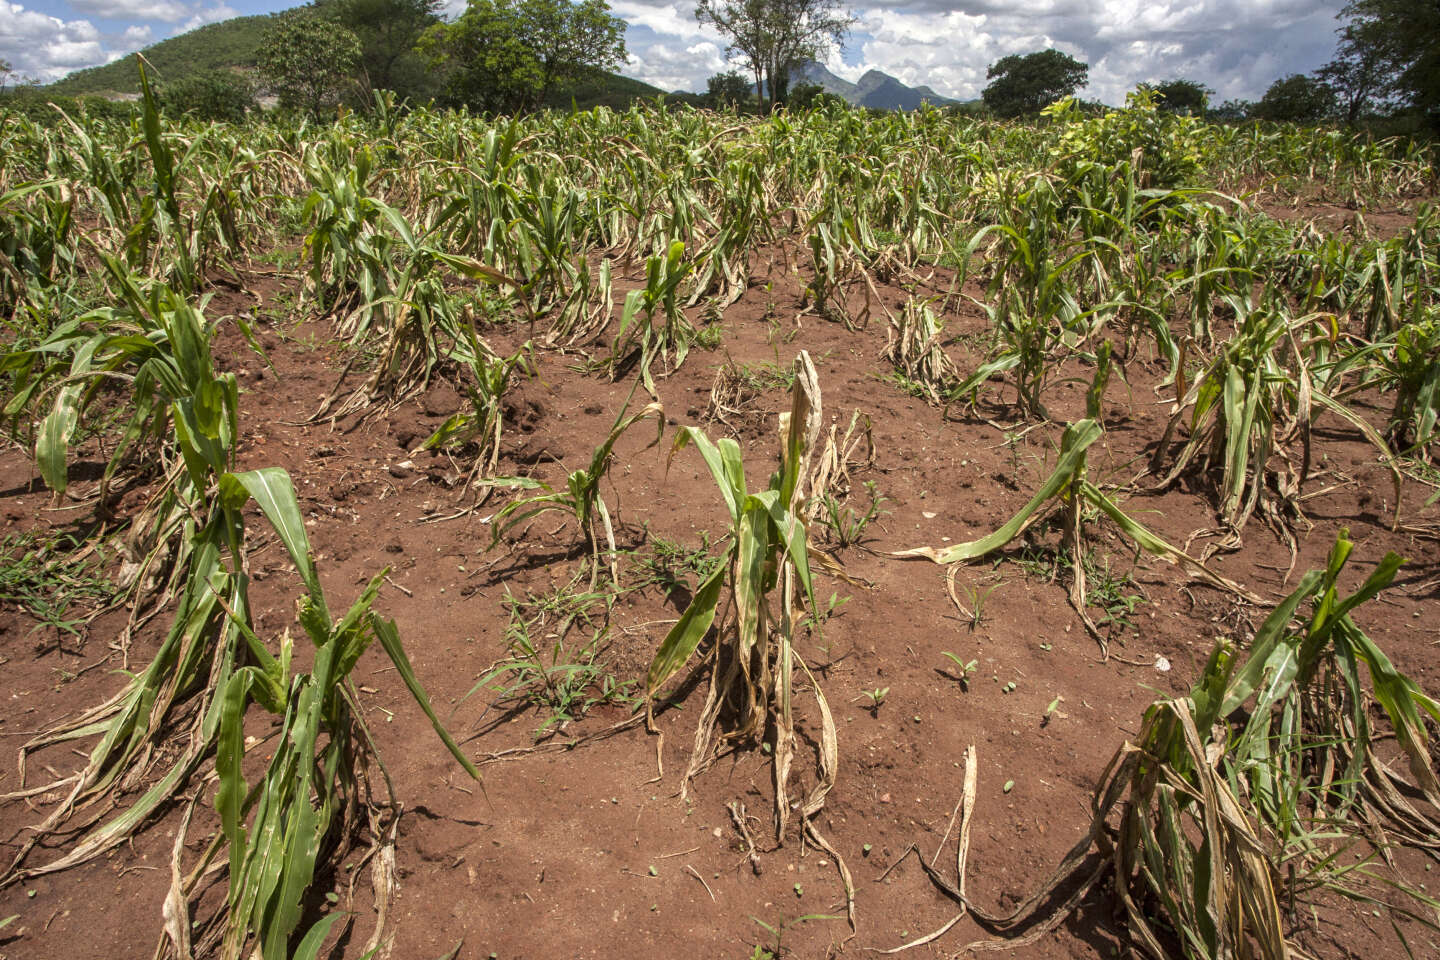 Sécheresse au Malawi : le pays en état de catastrophe naturelle liée au phénomène El Niño